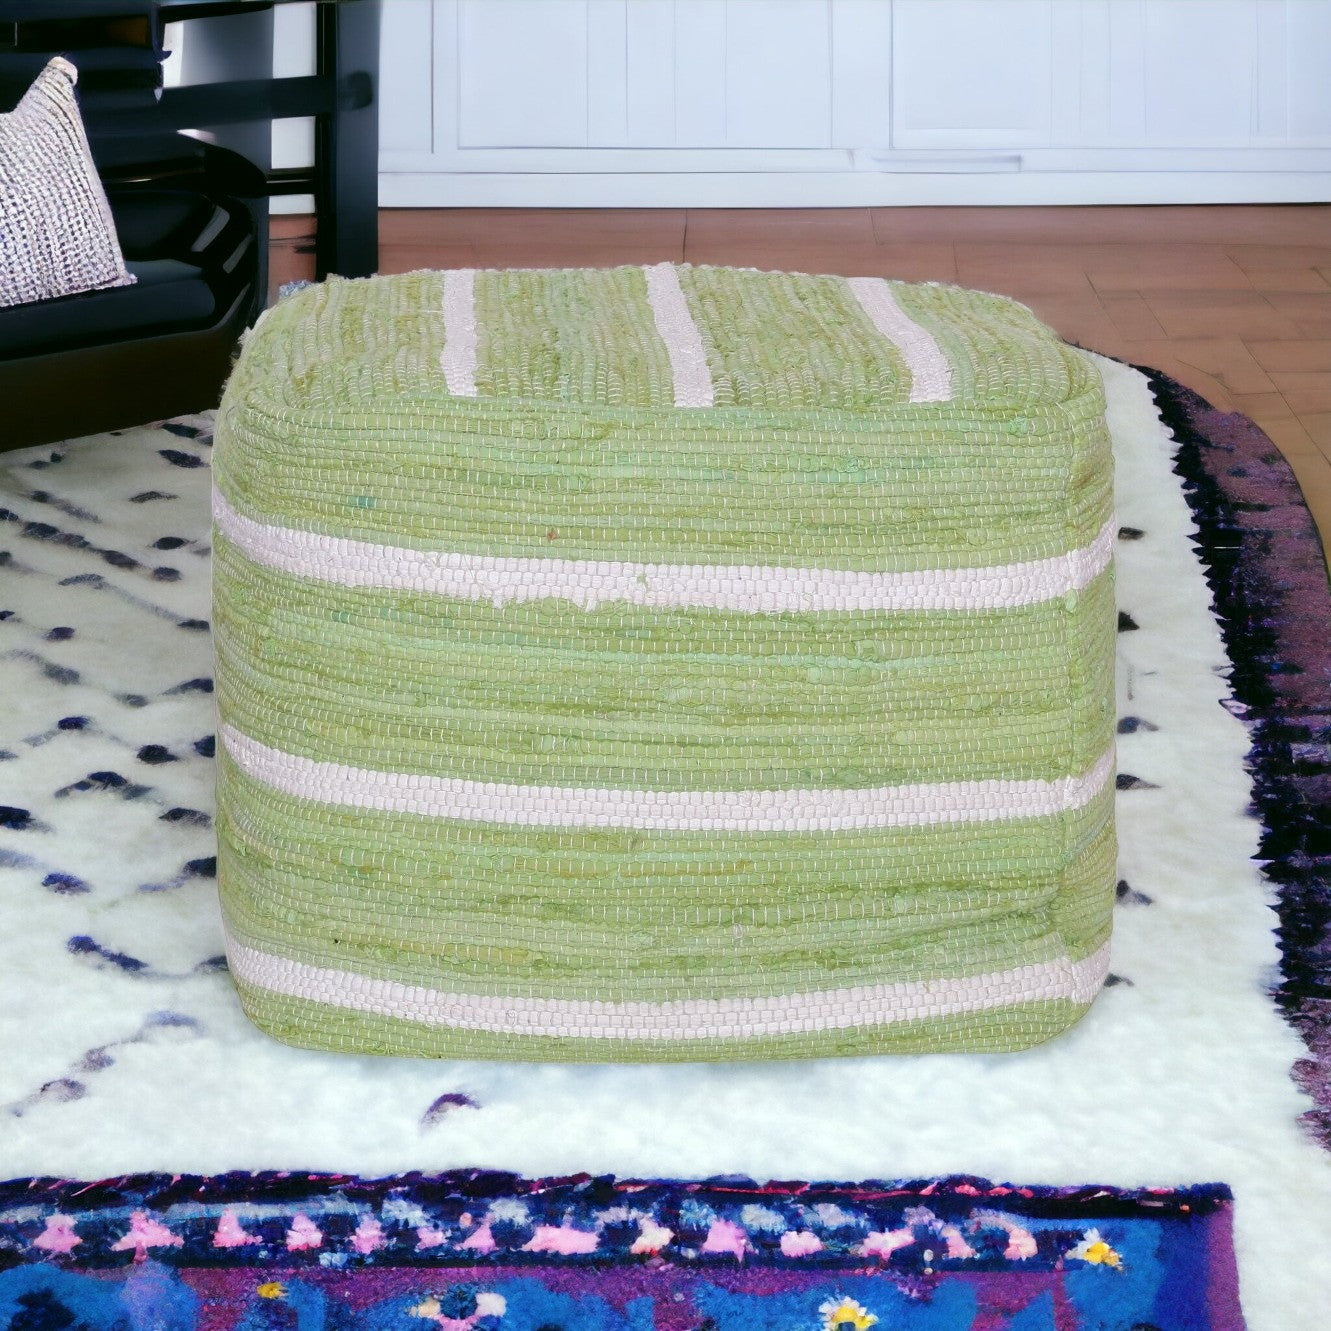 18" Green Cotton Cube Striped Pouf Ottoman